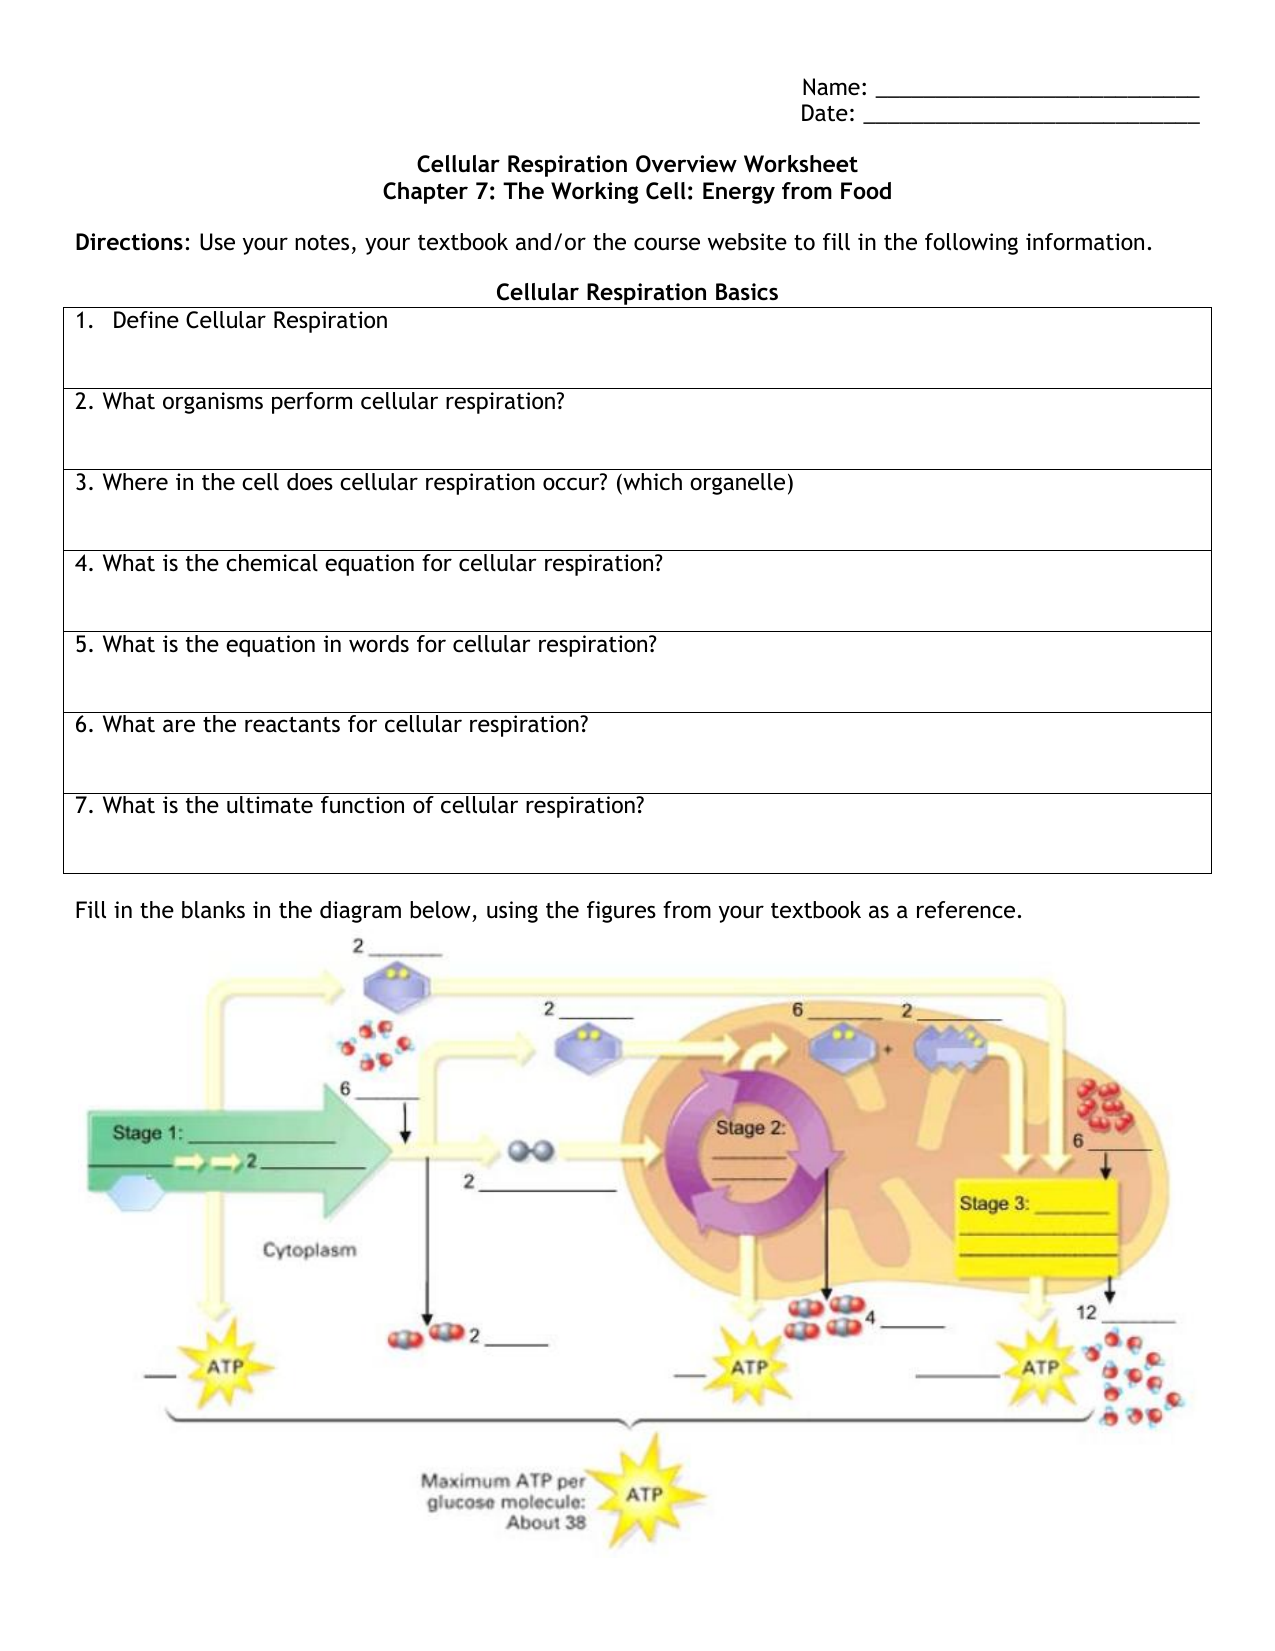 Cellular Respiration Overview Worksheet